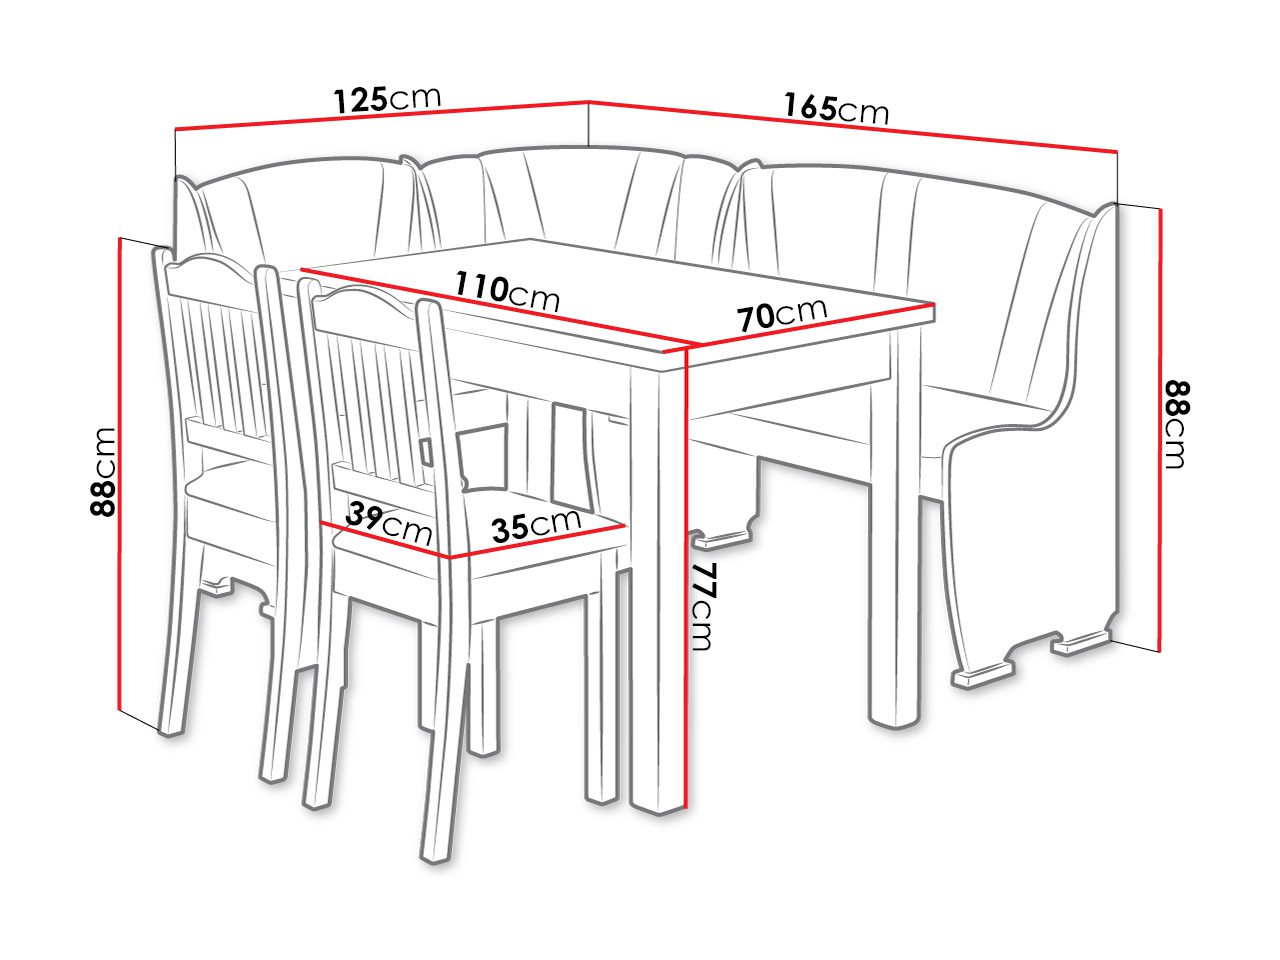 оптимальный размер обеденного стола на 6 человек